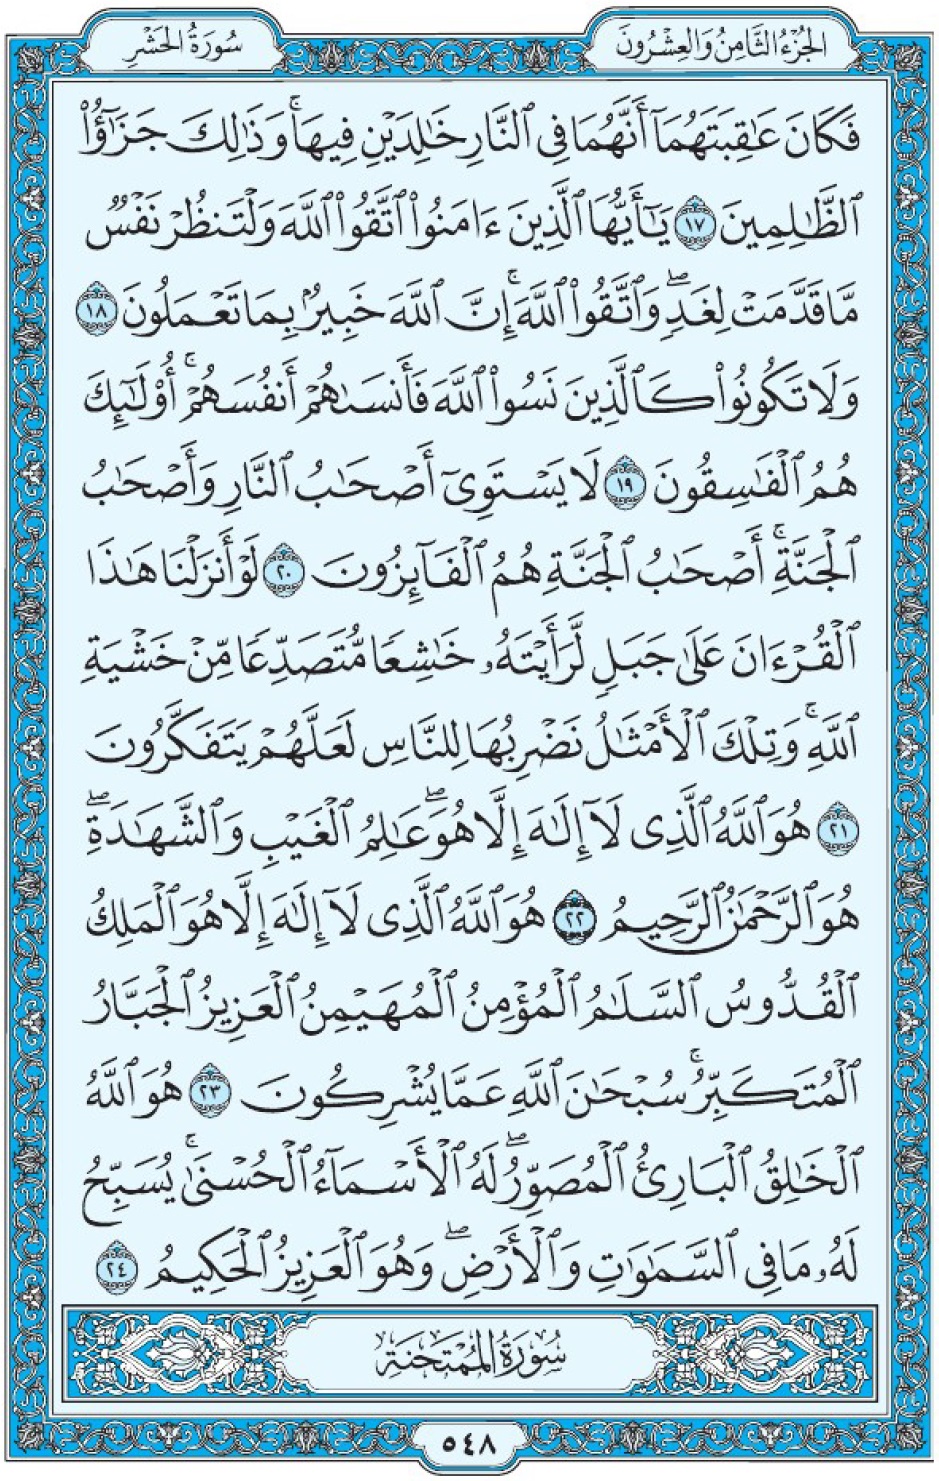 Коран Мединский мусхаф страница 548, сура аль-Хашр, аят 17-24